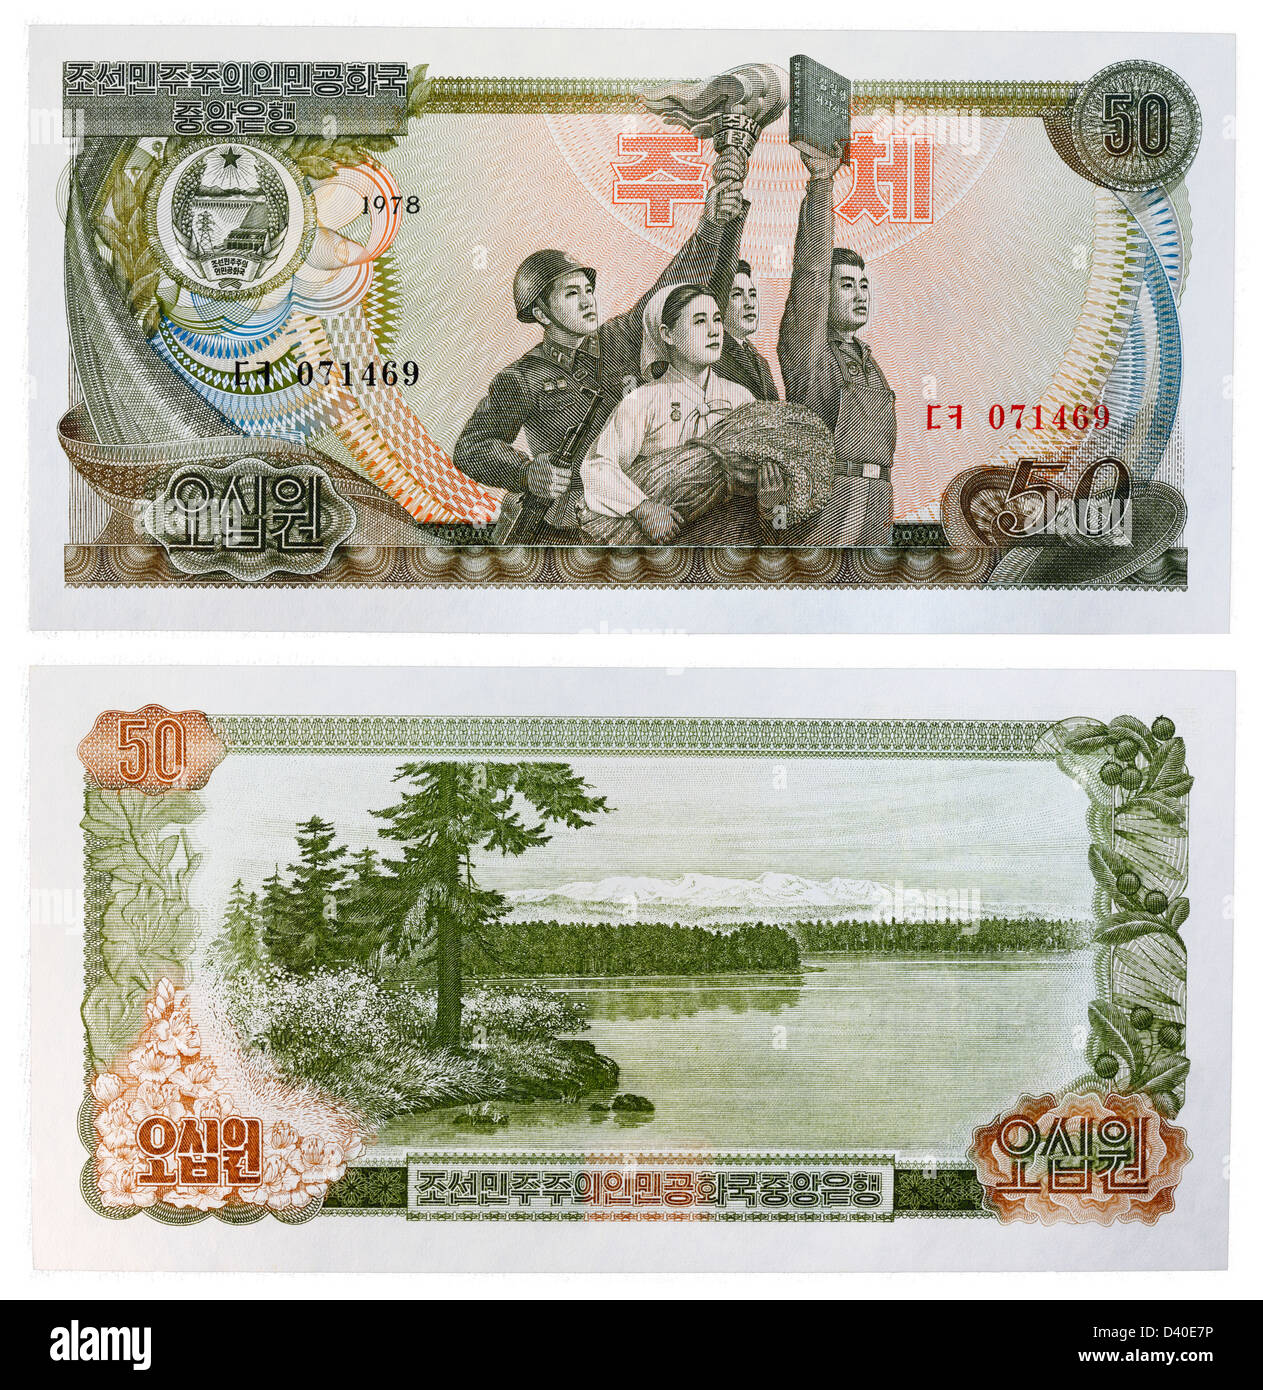 50 Ha vinto la banconota, soldato, contadina con grano, partigiano con torcia, l uomo con Libro, lago di scena, Corea del Nord, 1978 Foto Stock